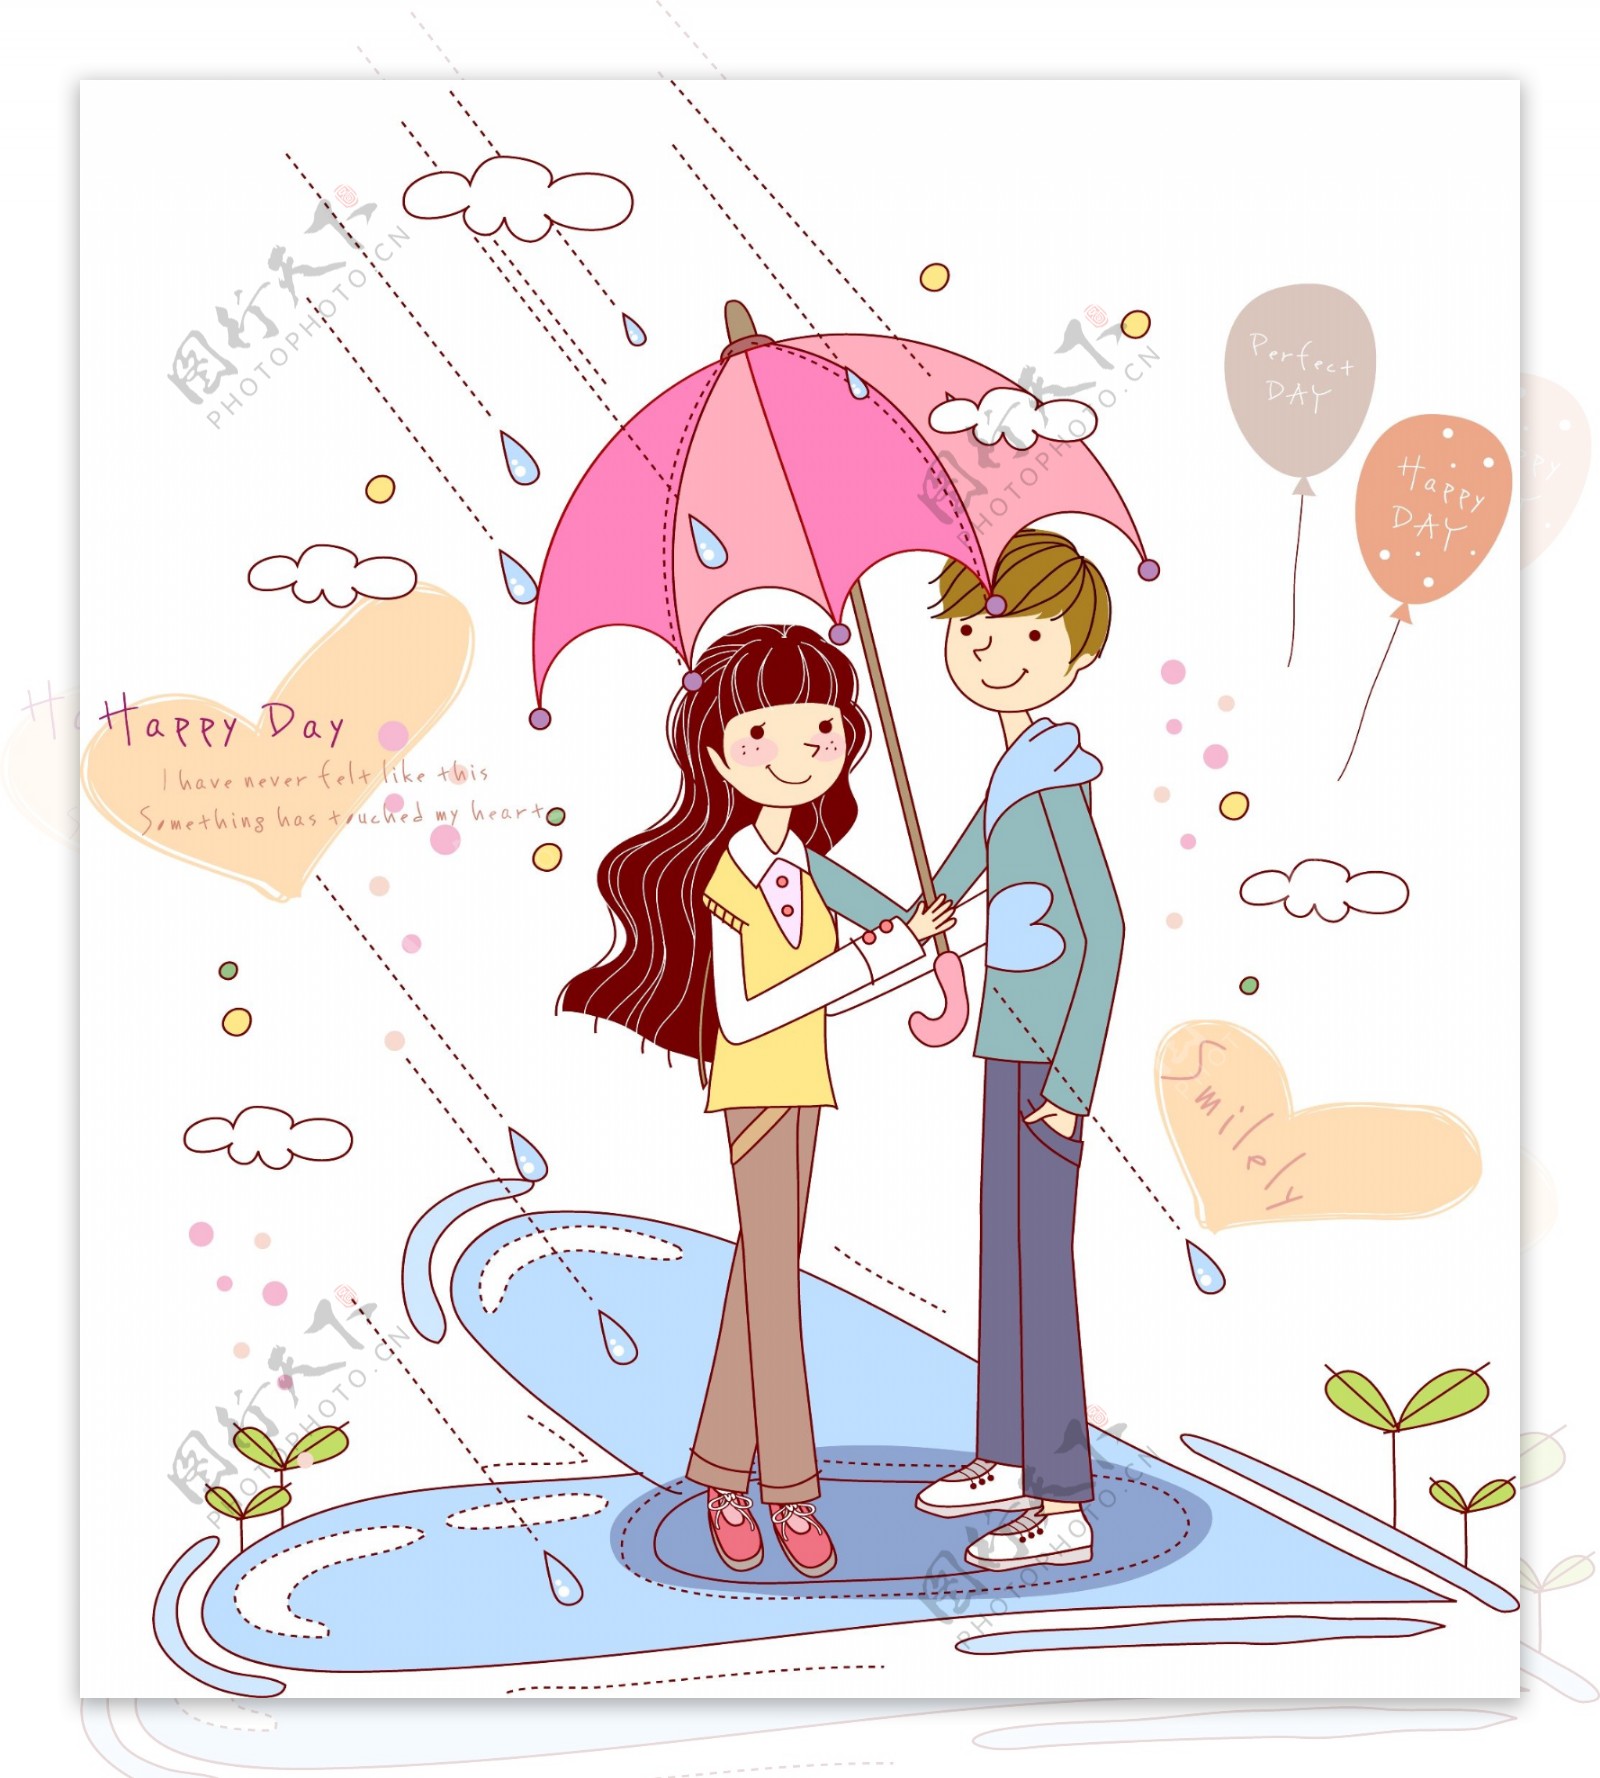 撑伞在雨中约会的情侣图片